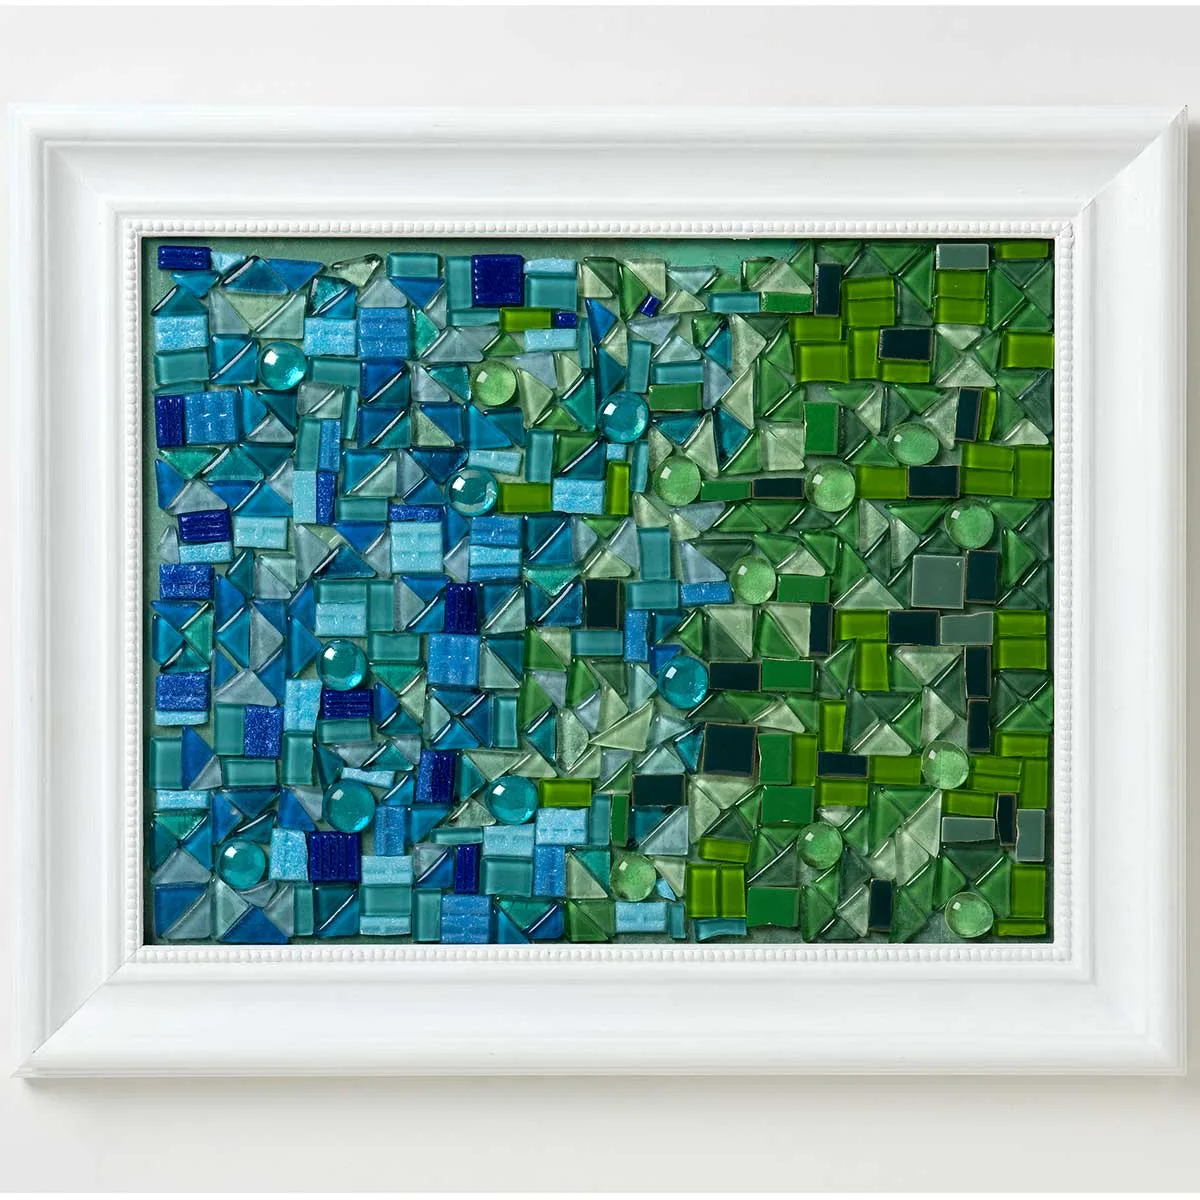 Make a mosaic in a frame